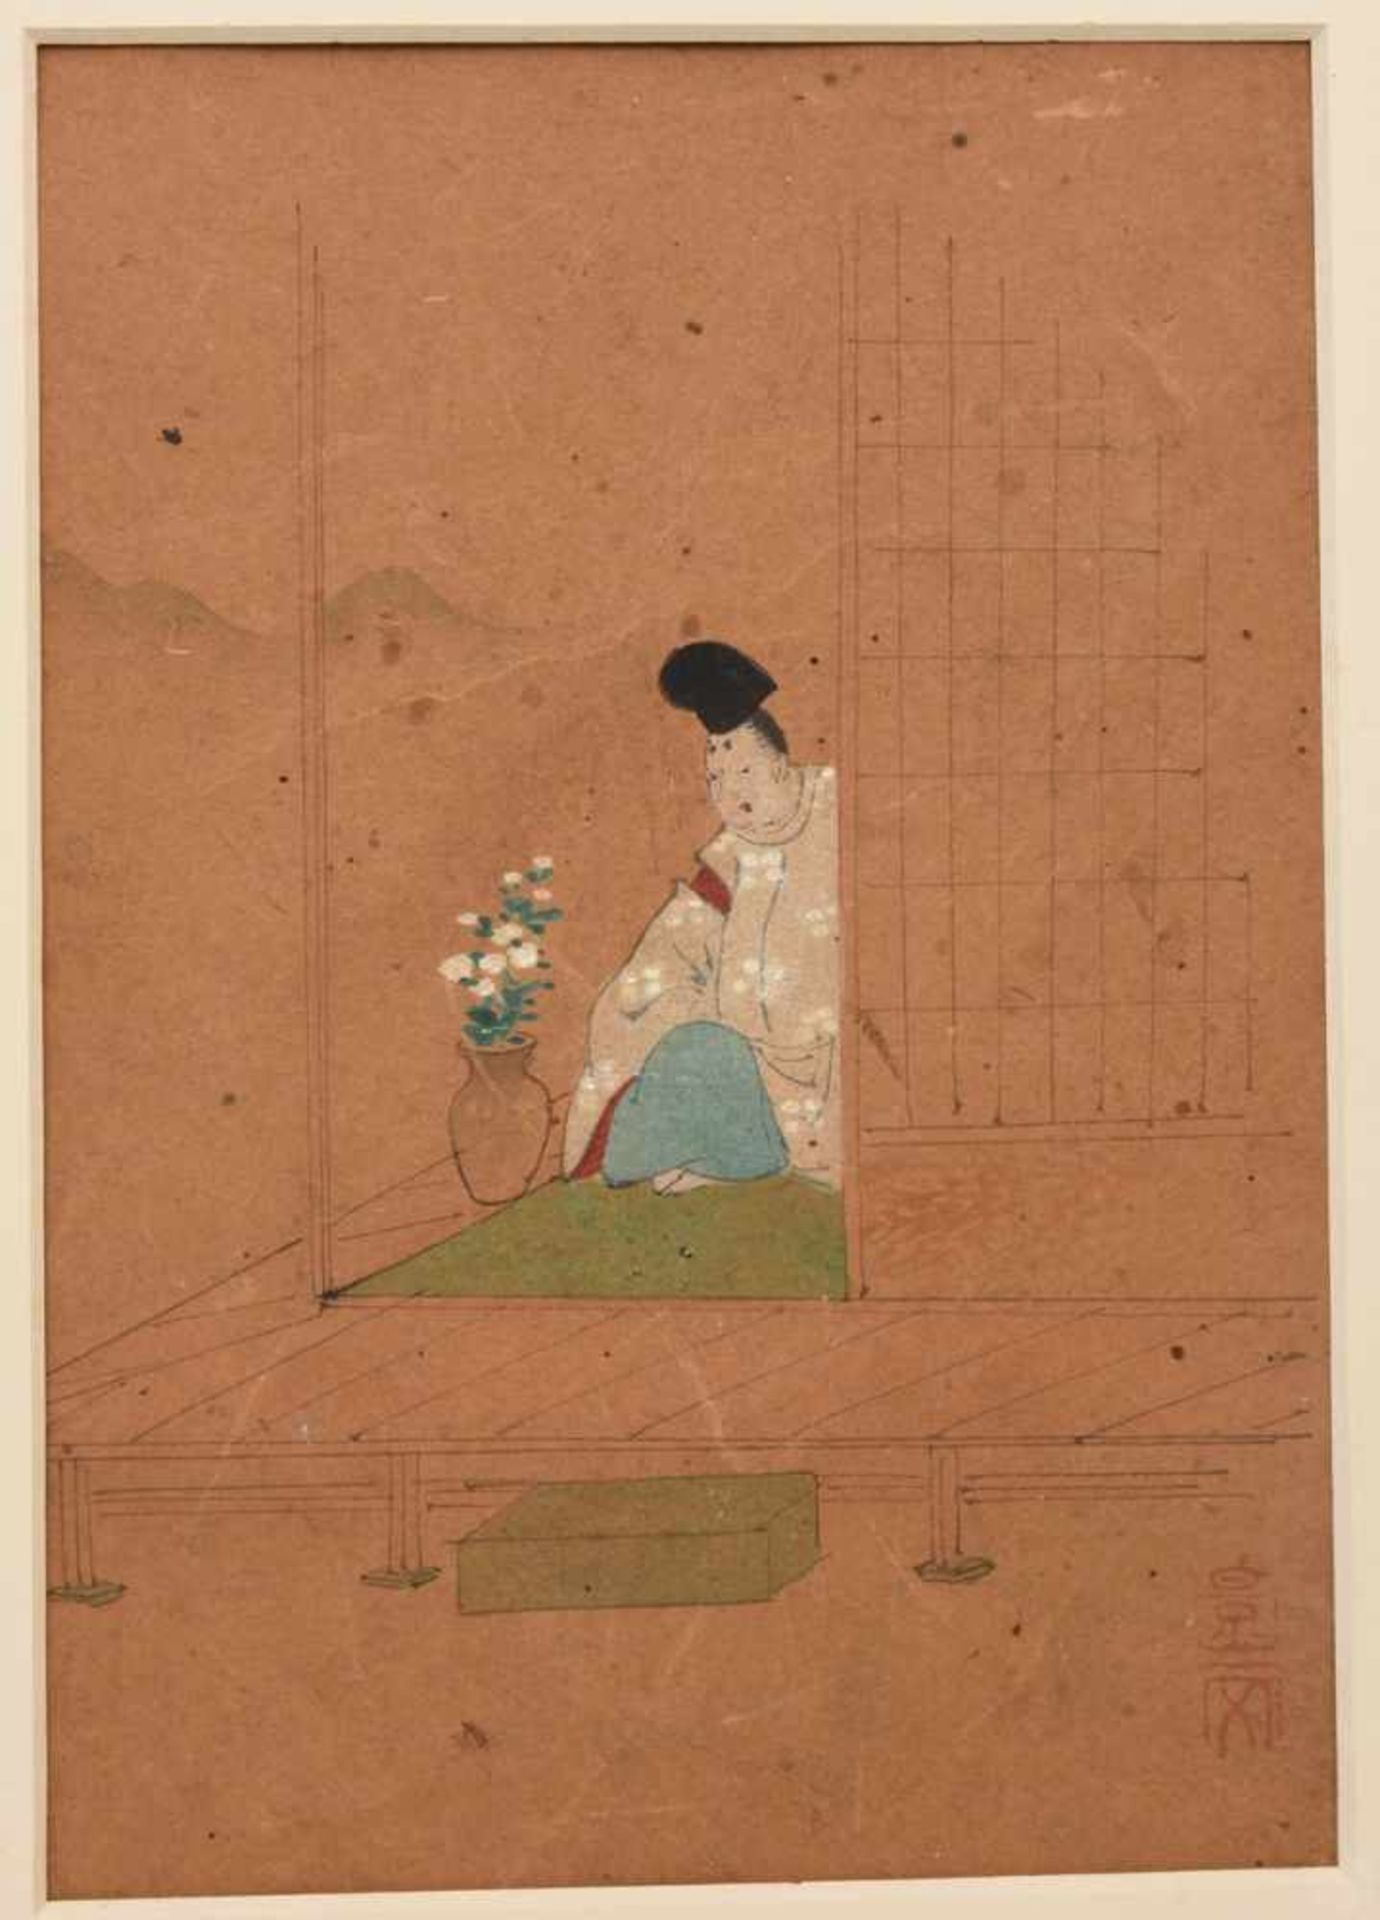 UNBEKANNETR KÜNSTLER, drei Miniaturmalereien, Seidenpapier im Passepartout, Japan, anfang 20.Jh.Zwei - Bild 4 aus 5